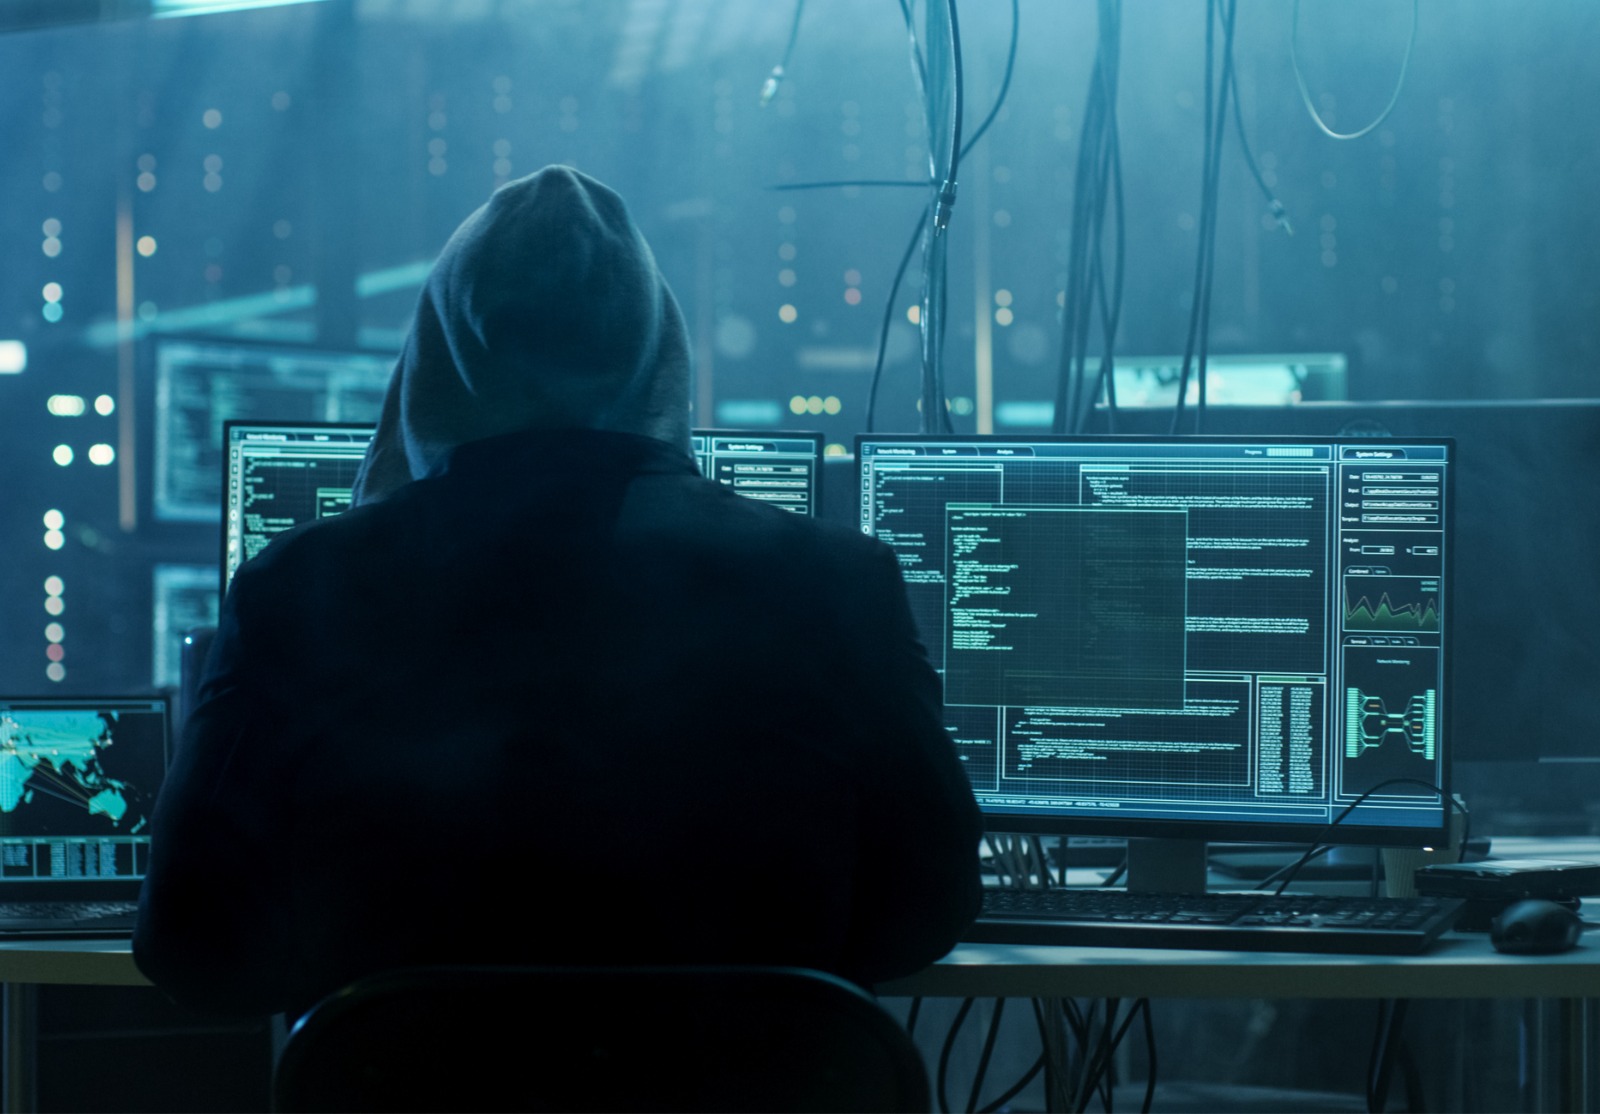 Dangereuse Hacker Hooded entonne des serveurs de données de gouvernement et infecte leur système avec un Virus. Son lieu de cachette a l’atmosphère sombre, plusieurs écrans, câbles partout.